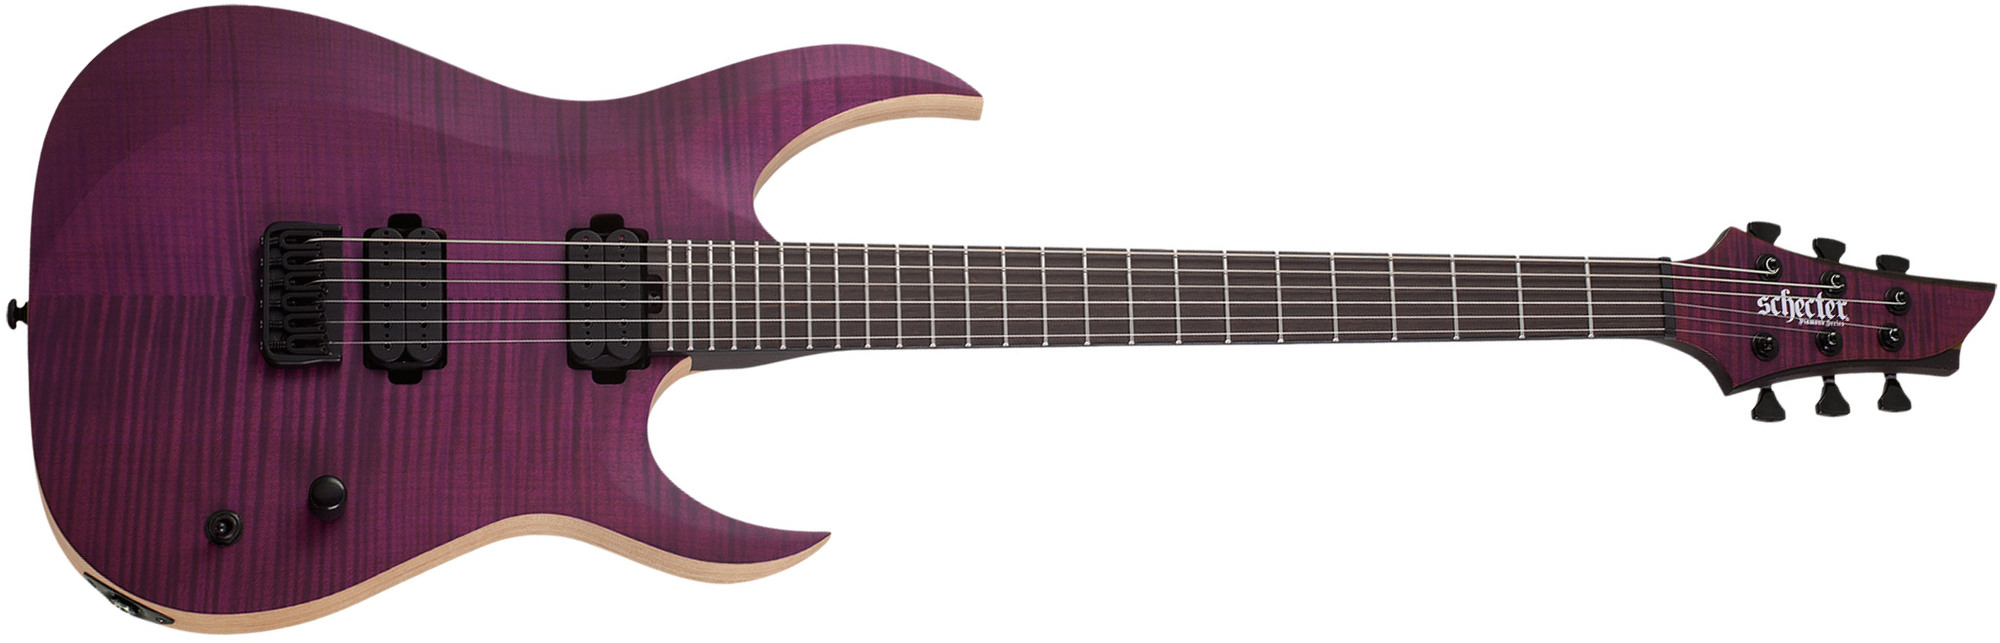 Schecter John Browne Tao-6 Signature 2h Ht Eb - Satin Trans Purple - Guitare Électrique Forme Str - Main picture